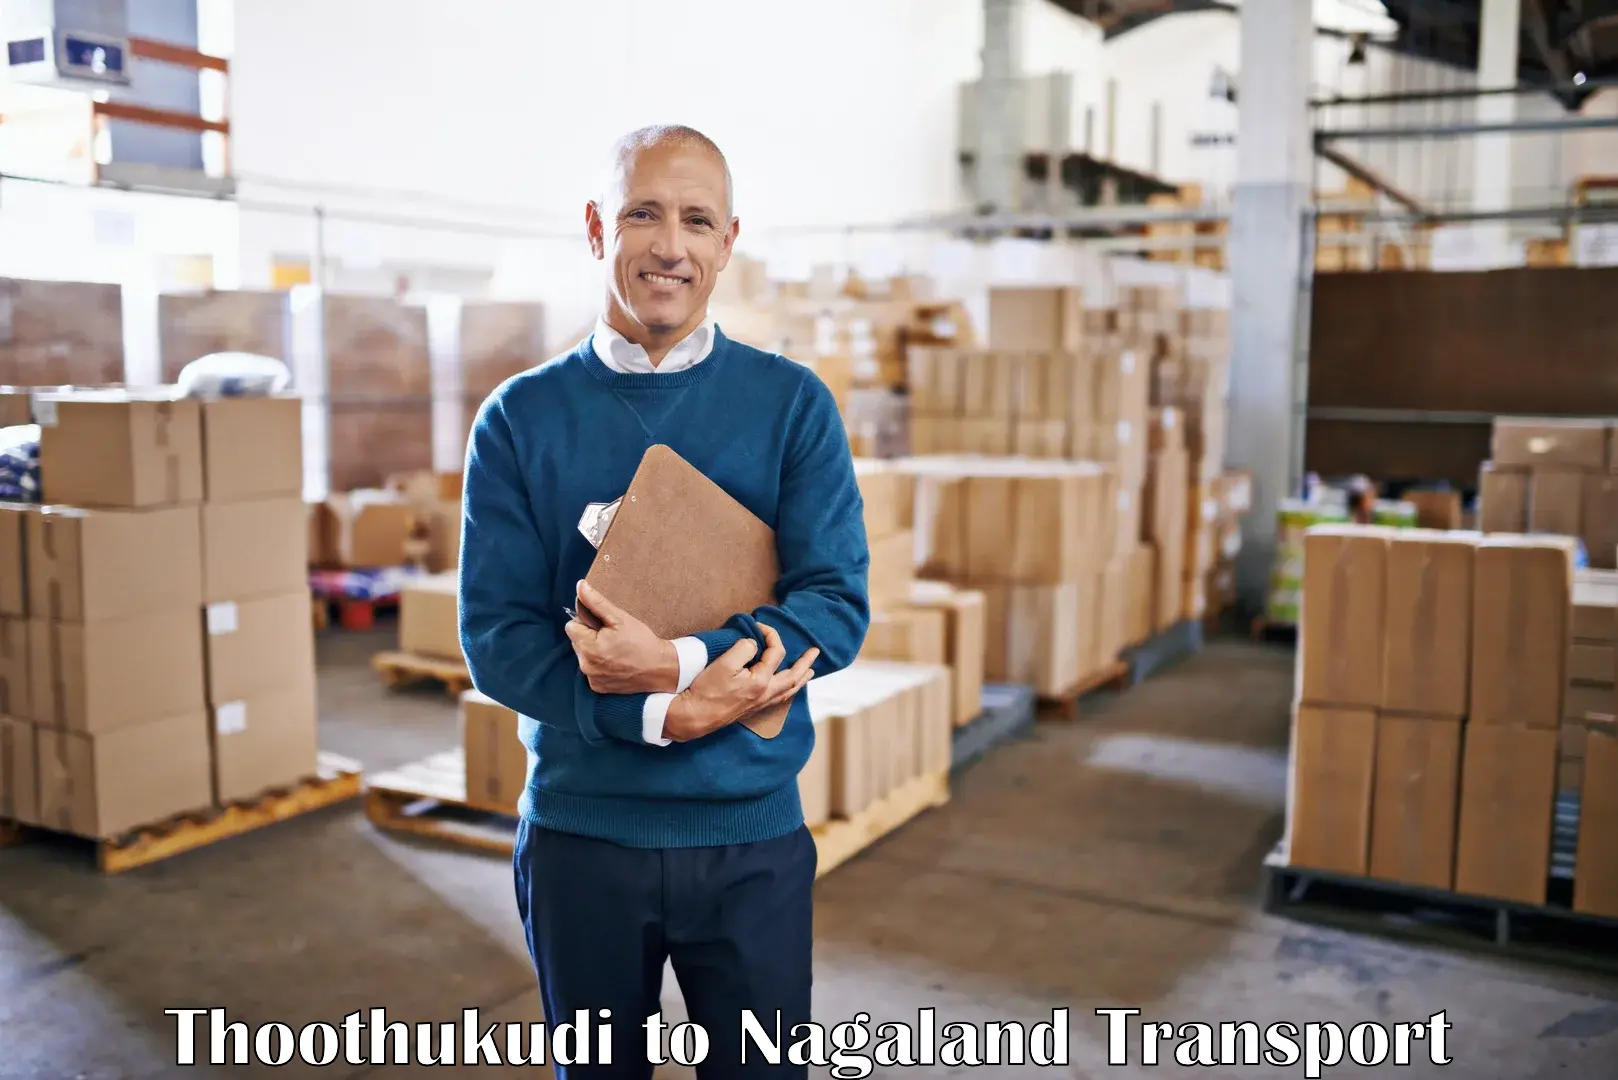 Lorry transport service Thoothukudi to NIT Nagaland